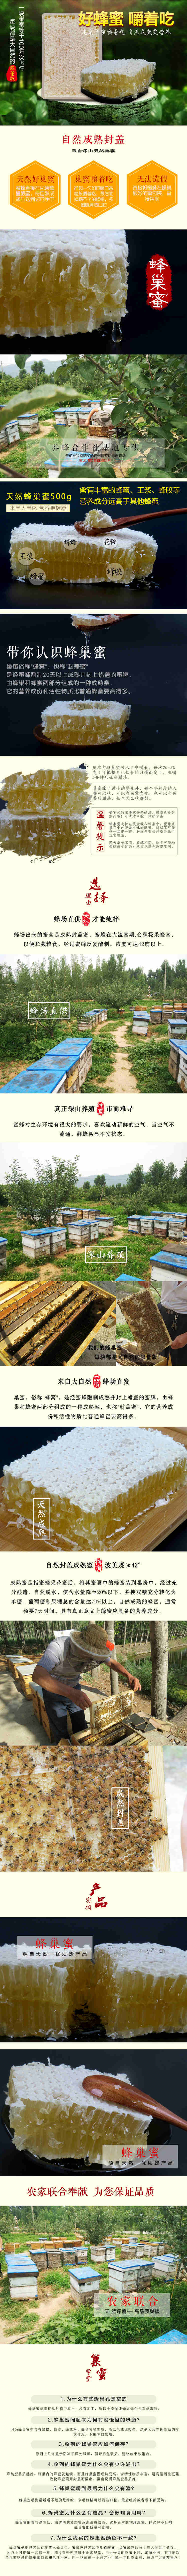 君祥天然新蜂巢蜜盒装500g农家自产特产土蜂蜜蜂窝蜜嚼着吃的蜂蜜